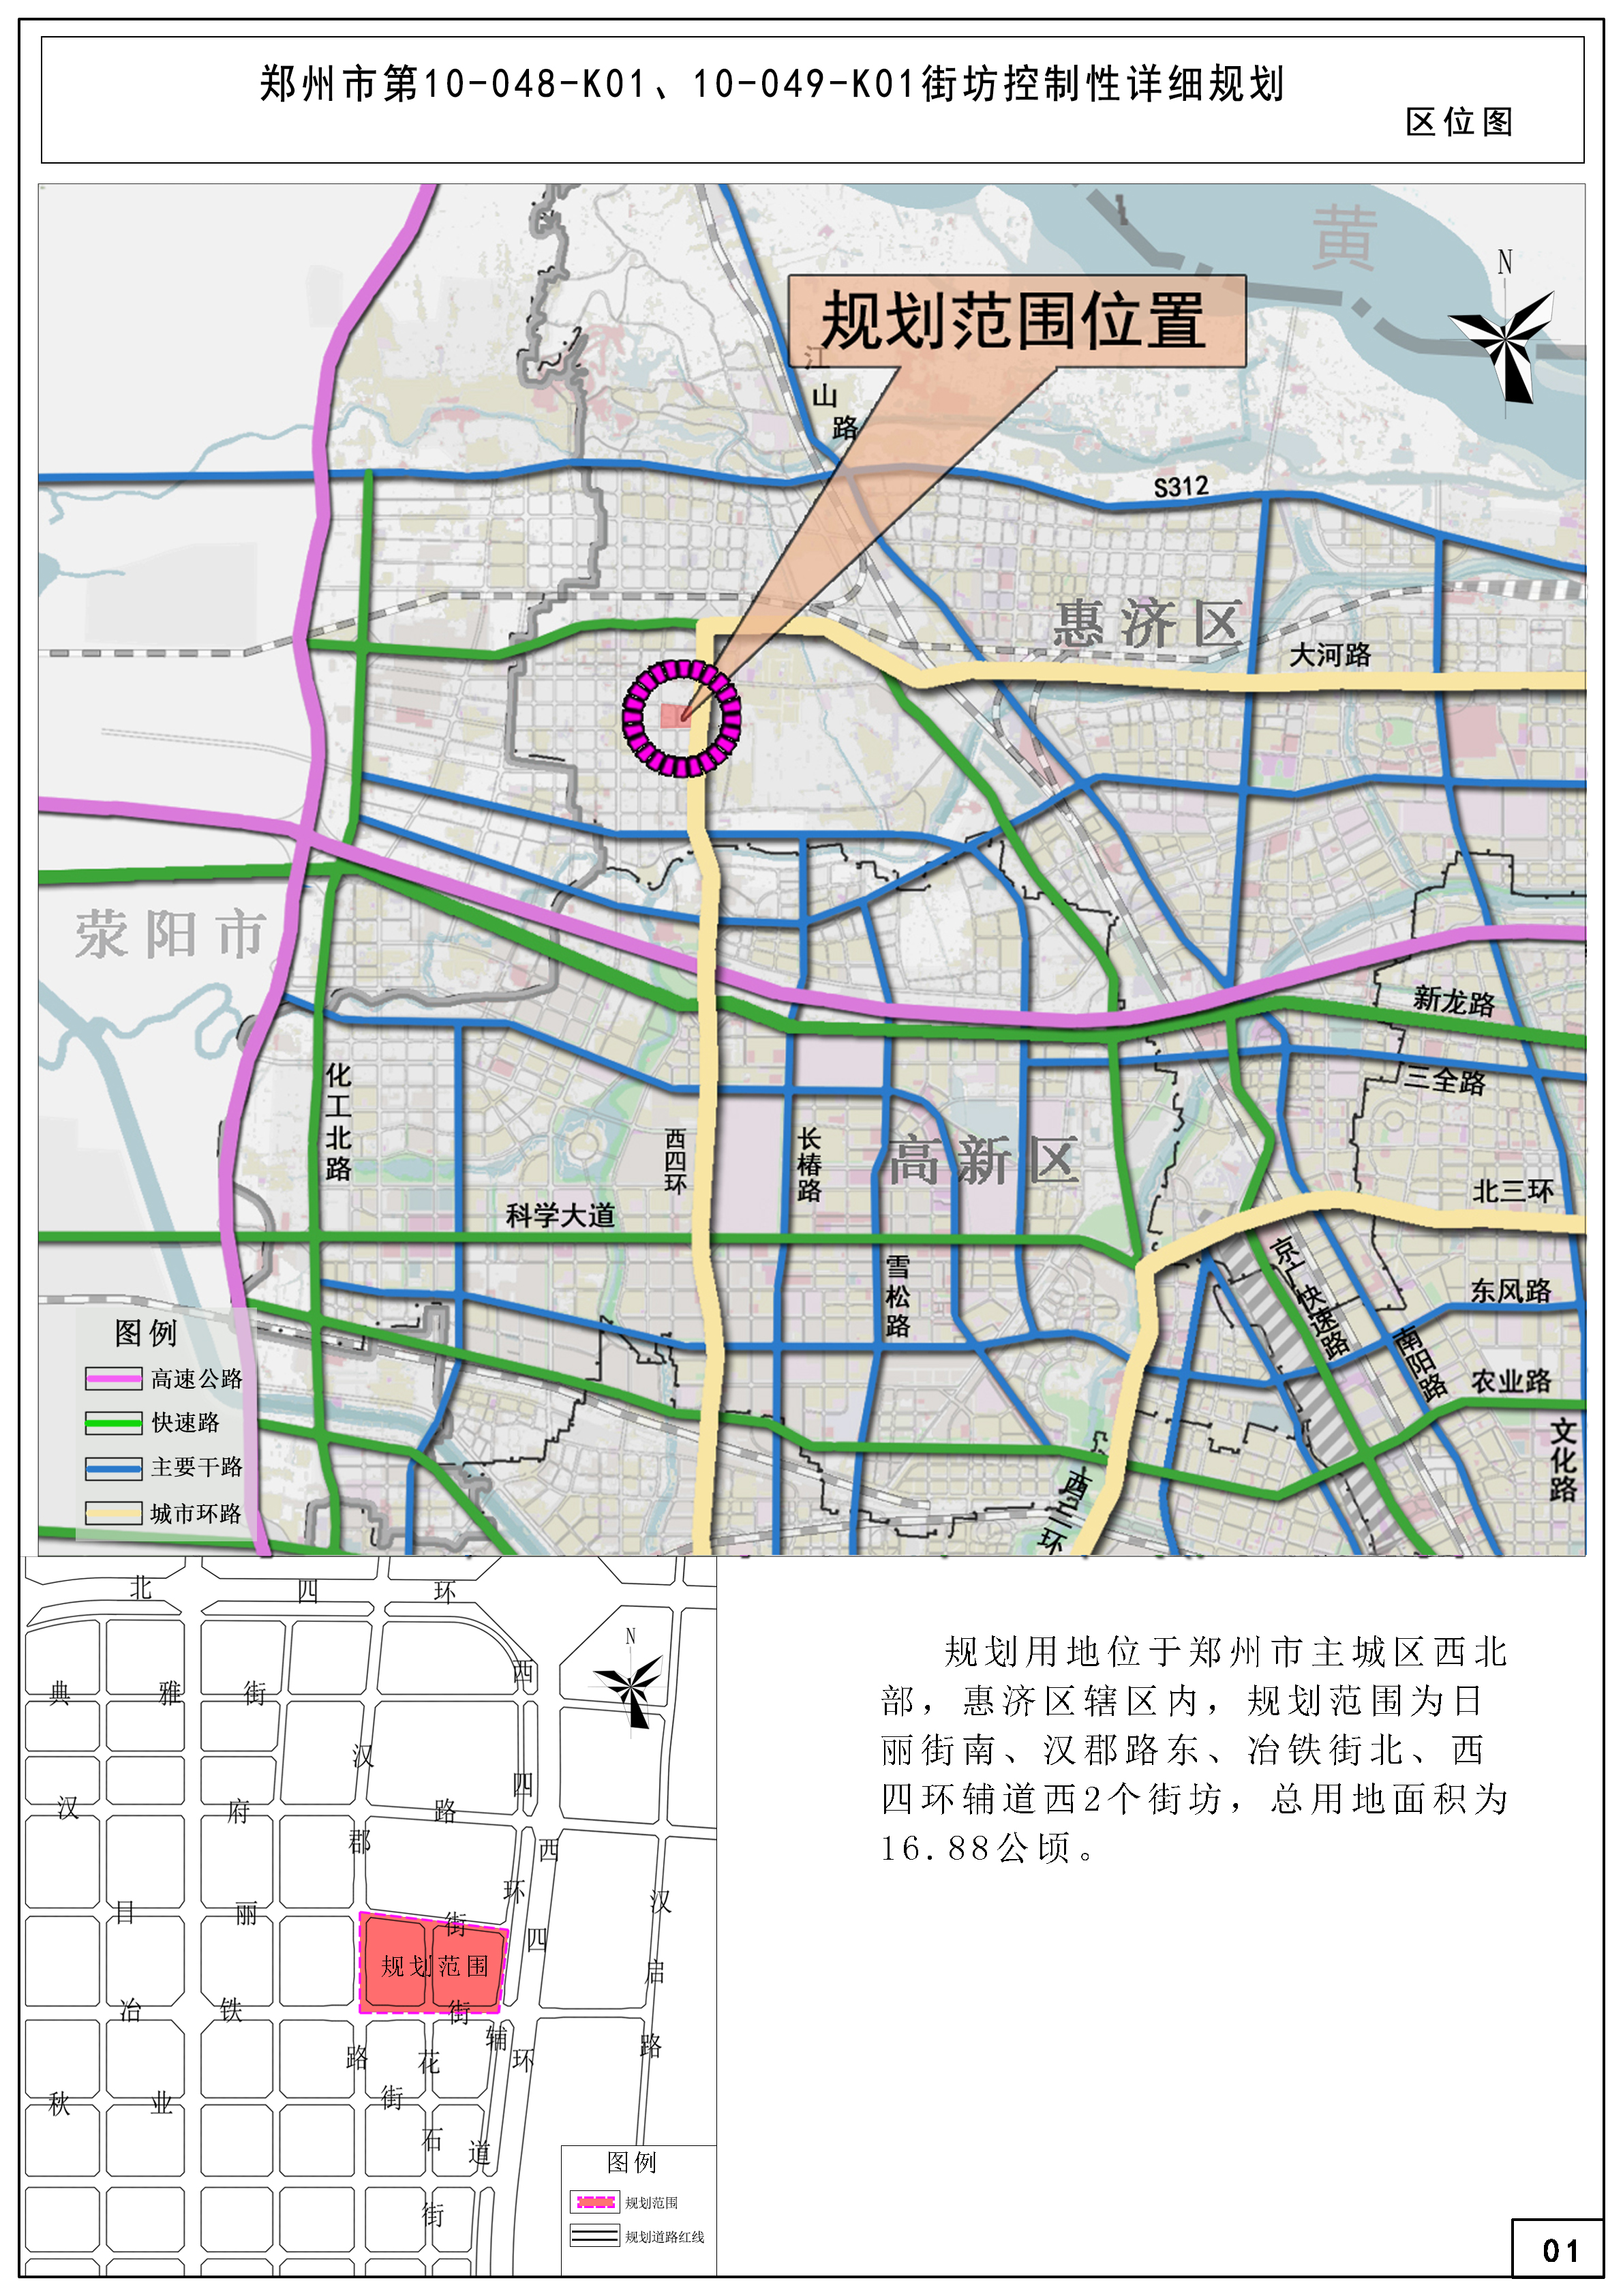 郑州市第10-048-K01、10-049-K01街坊控制性详细规划